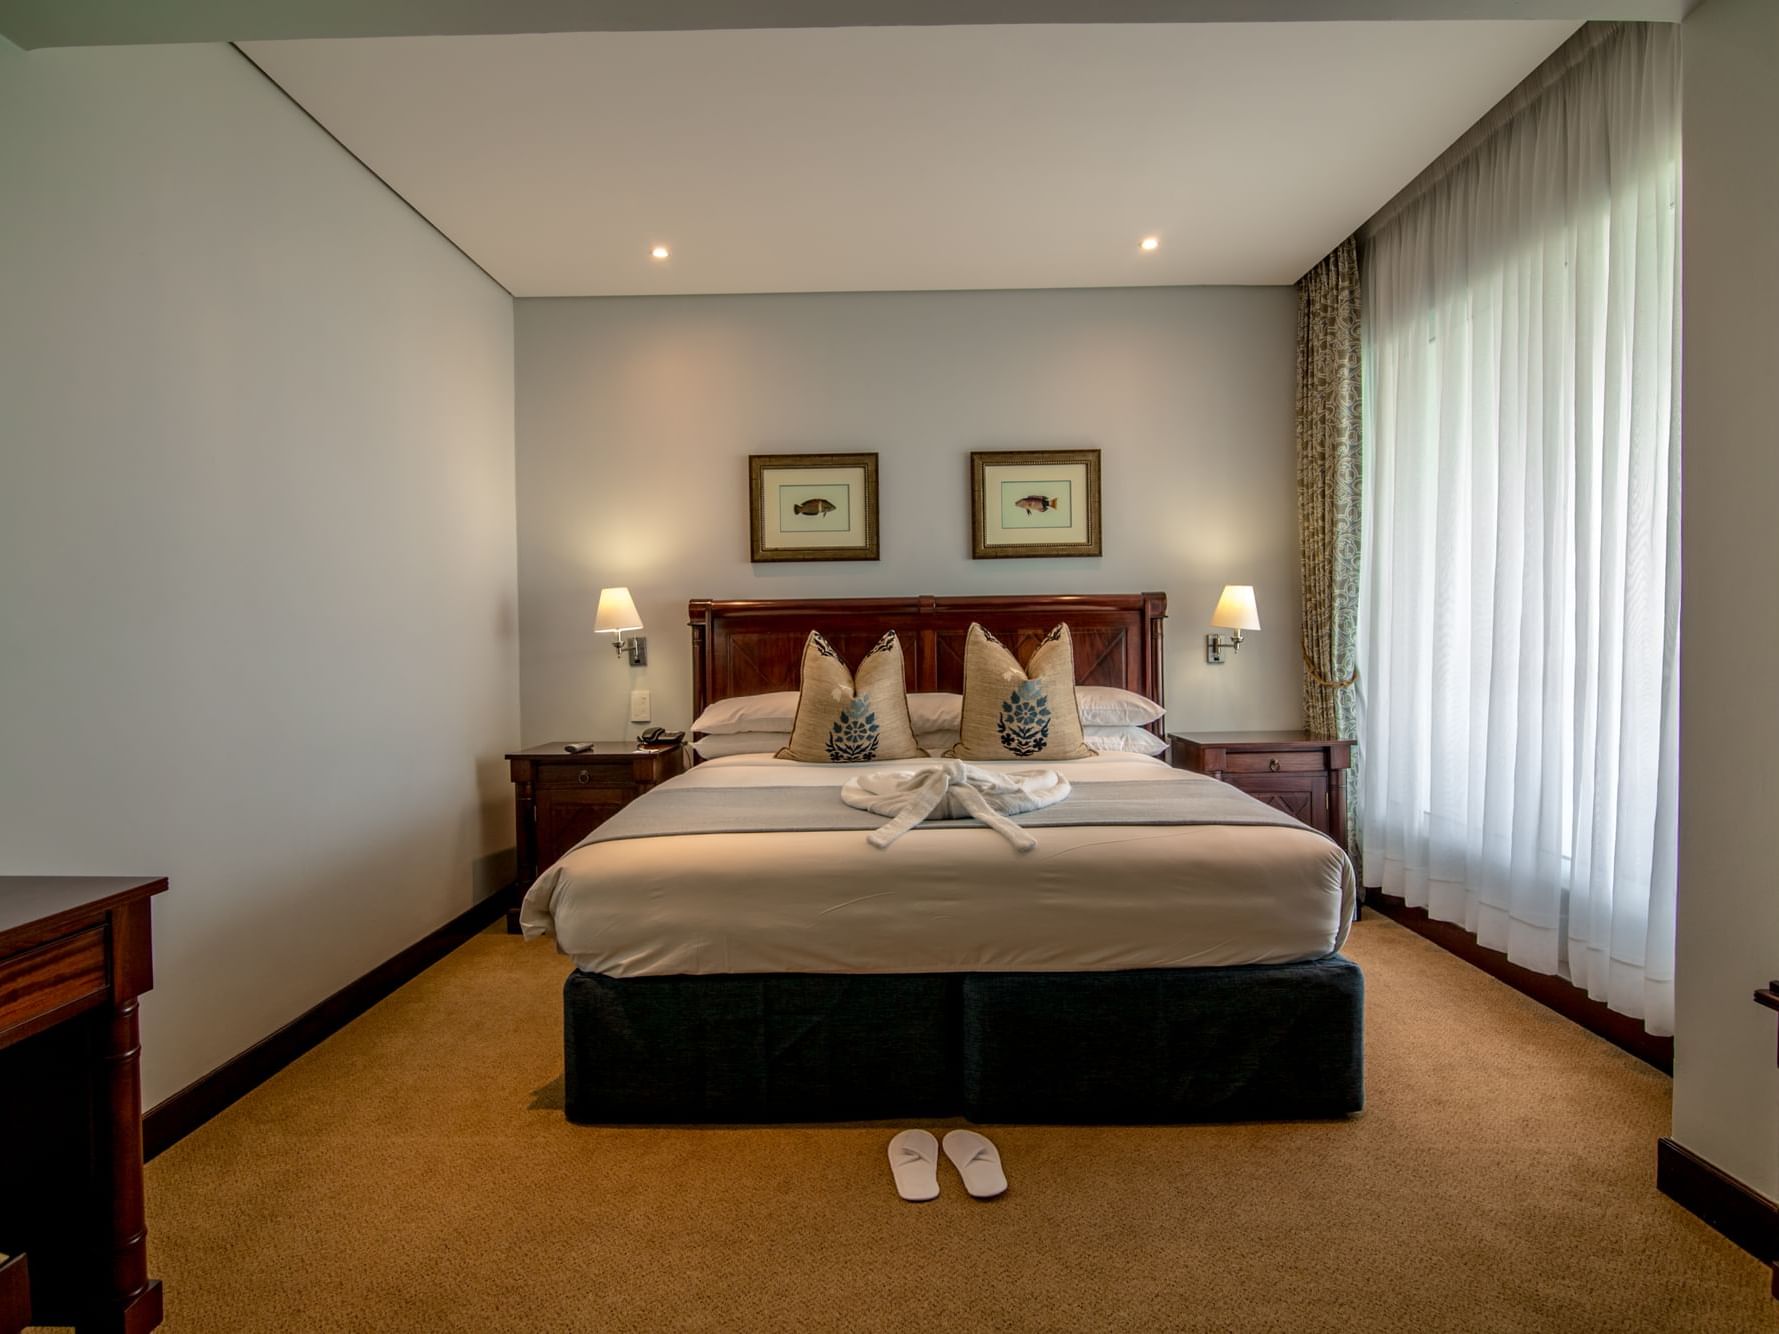 Bedroom arrangement in junior suite at Cardoso Hotel